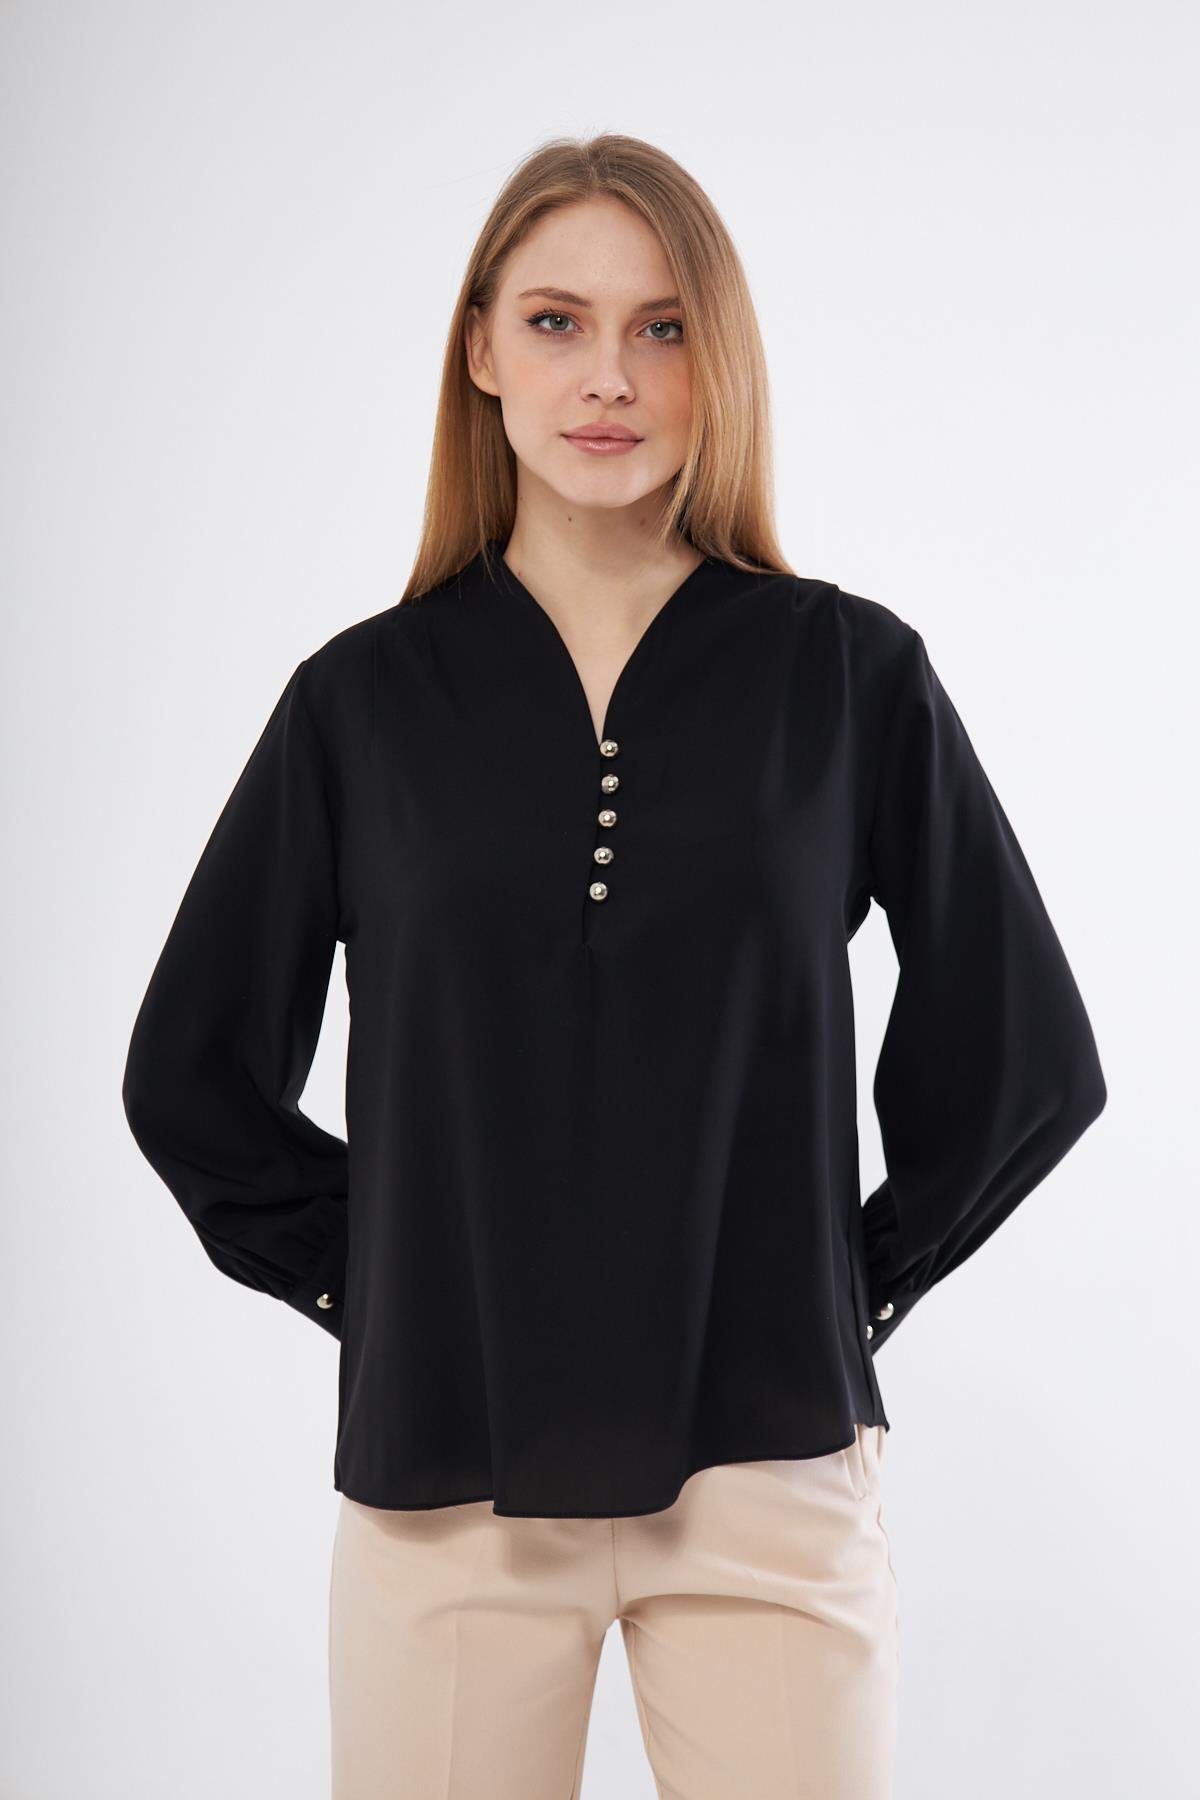 Kadın Düğme Detaylı Pileli V Yaka Gömlek - Siyah